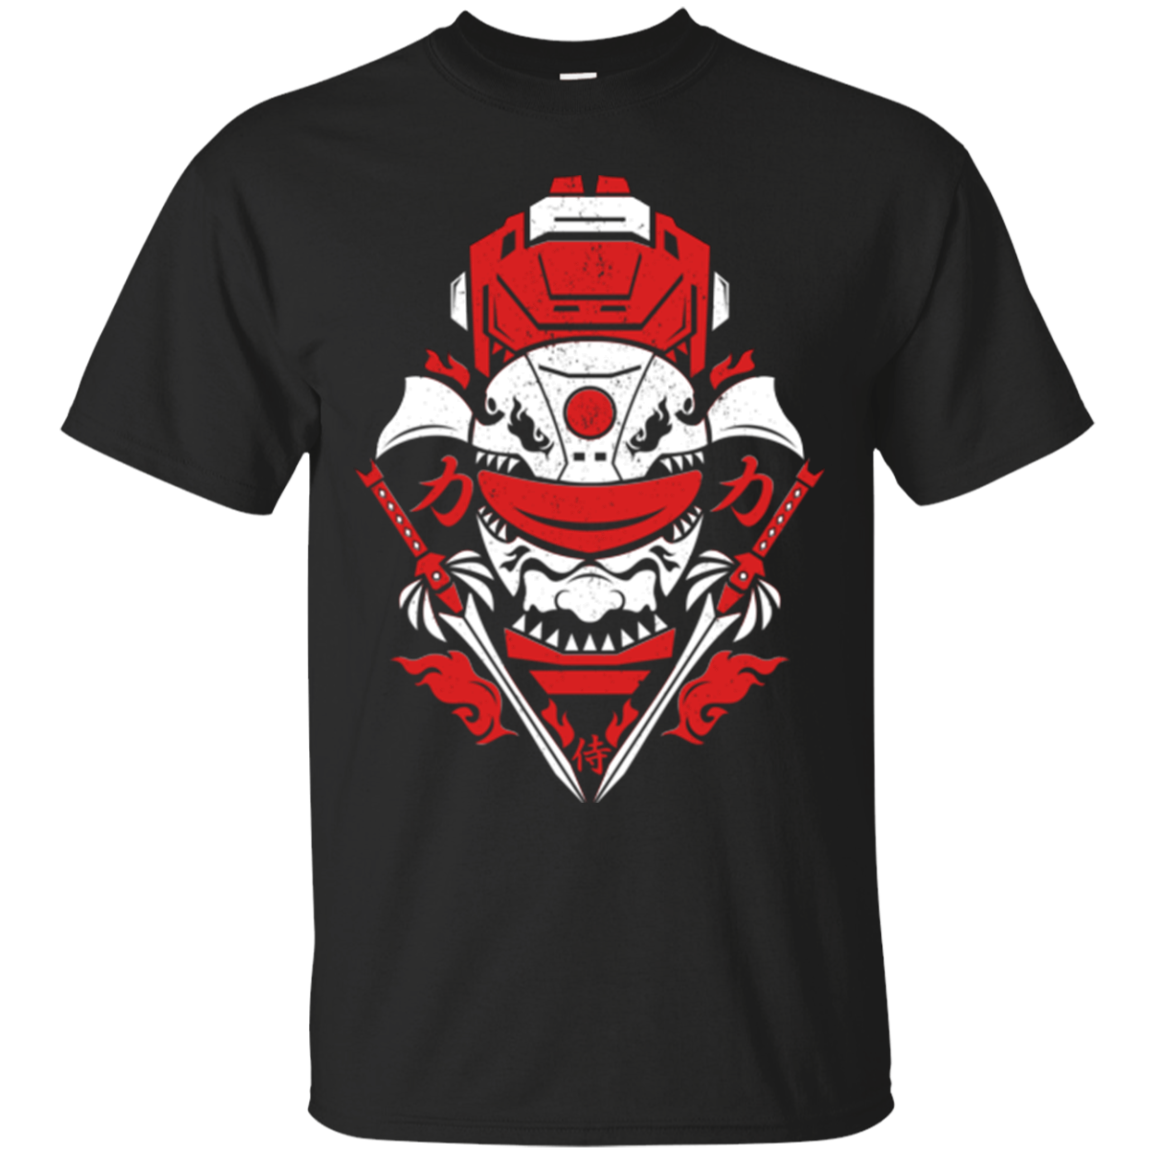 Red Ranger T-Shirt